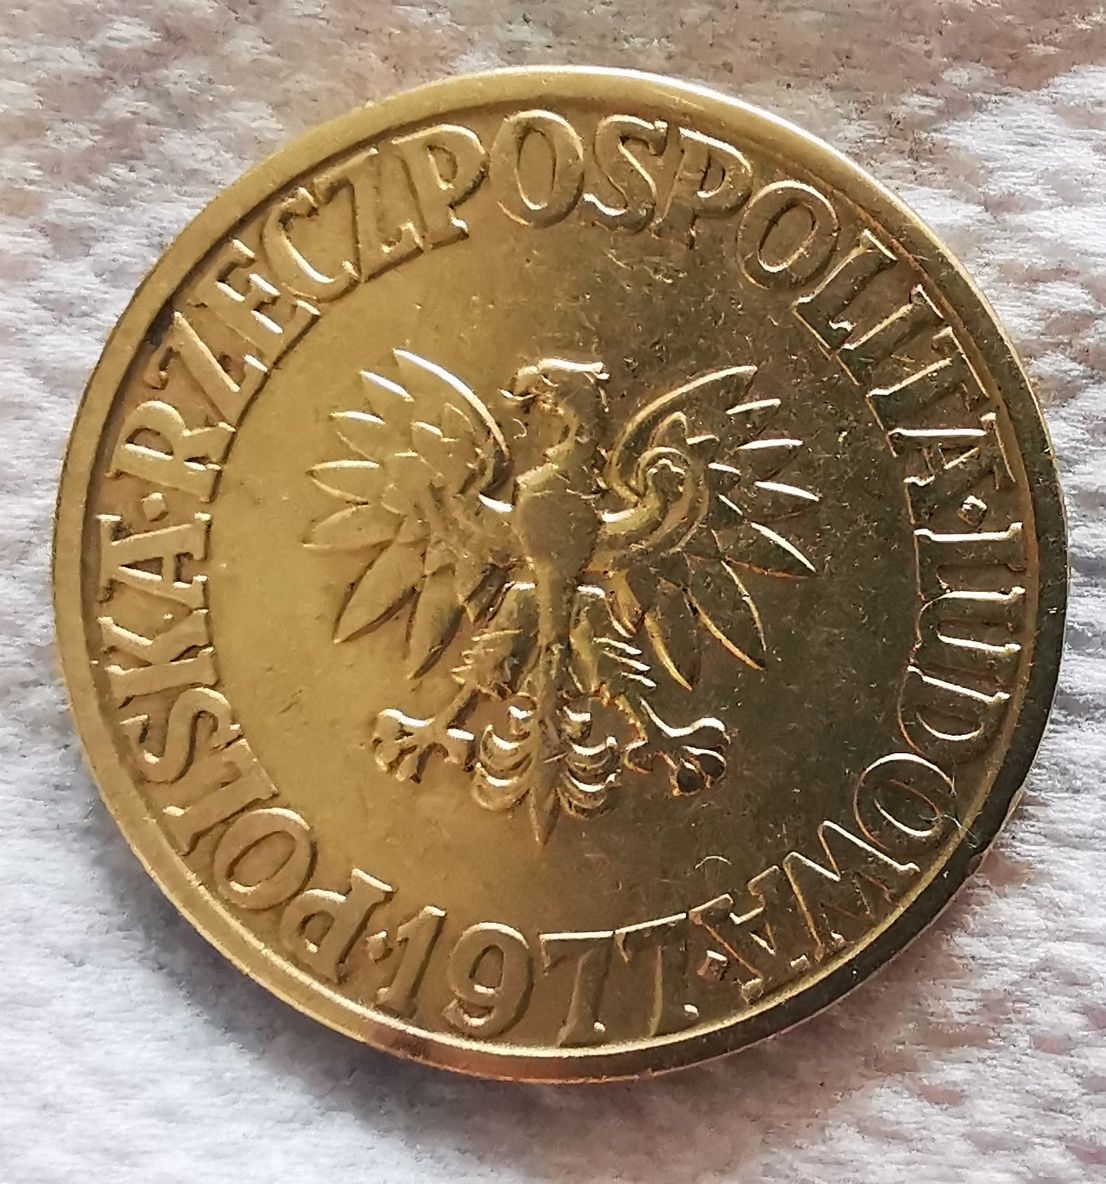 Moneta 5 złotych 1977r bez znaku mennicy